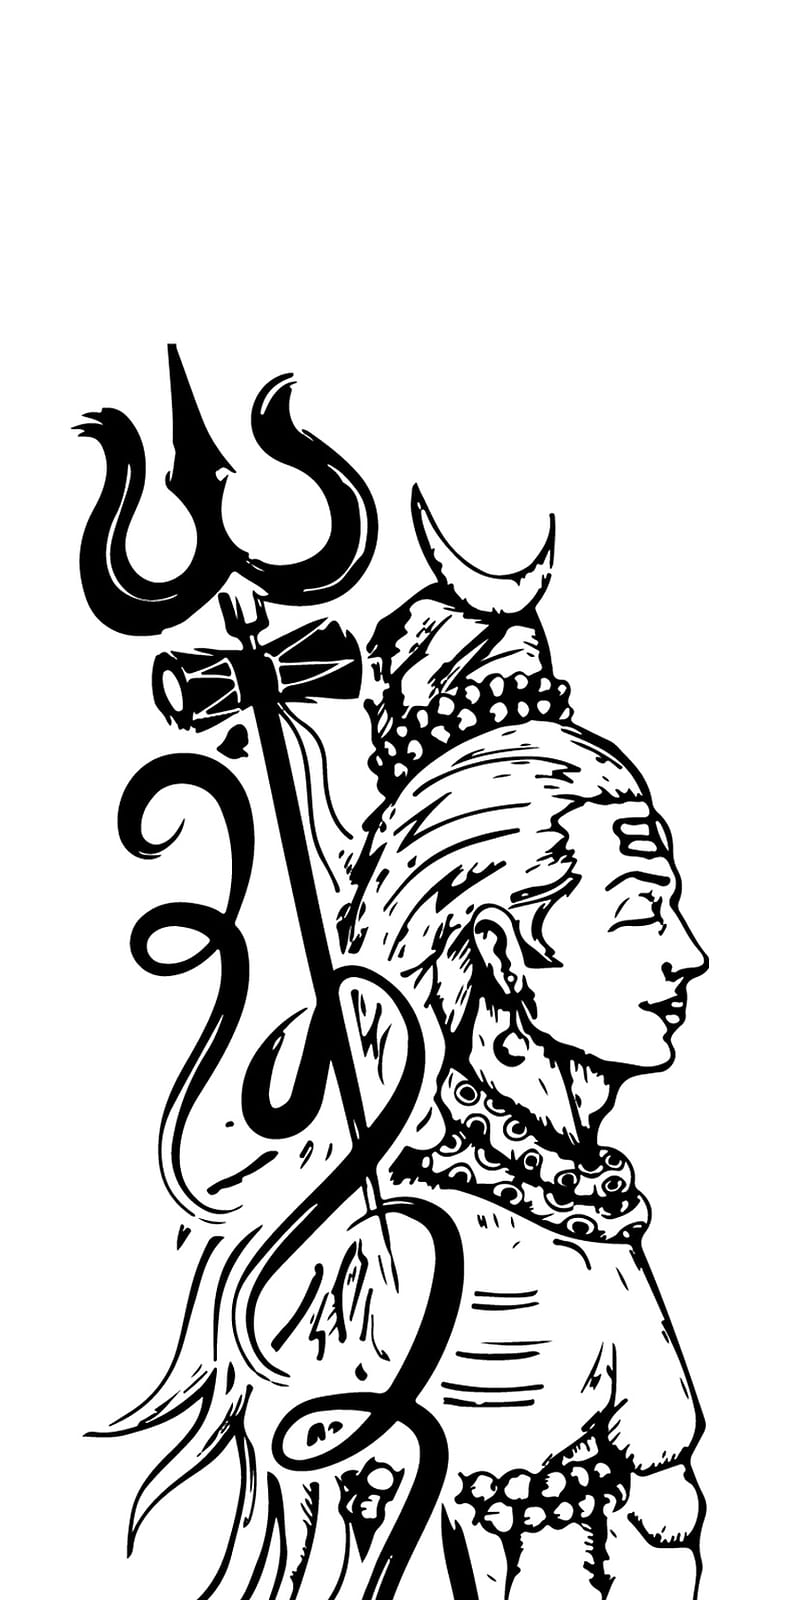 Pin by शर कषण on હર હર મહદવ   Shiva tattoo Shiva tattoo design  Shiva